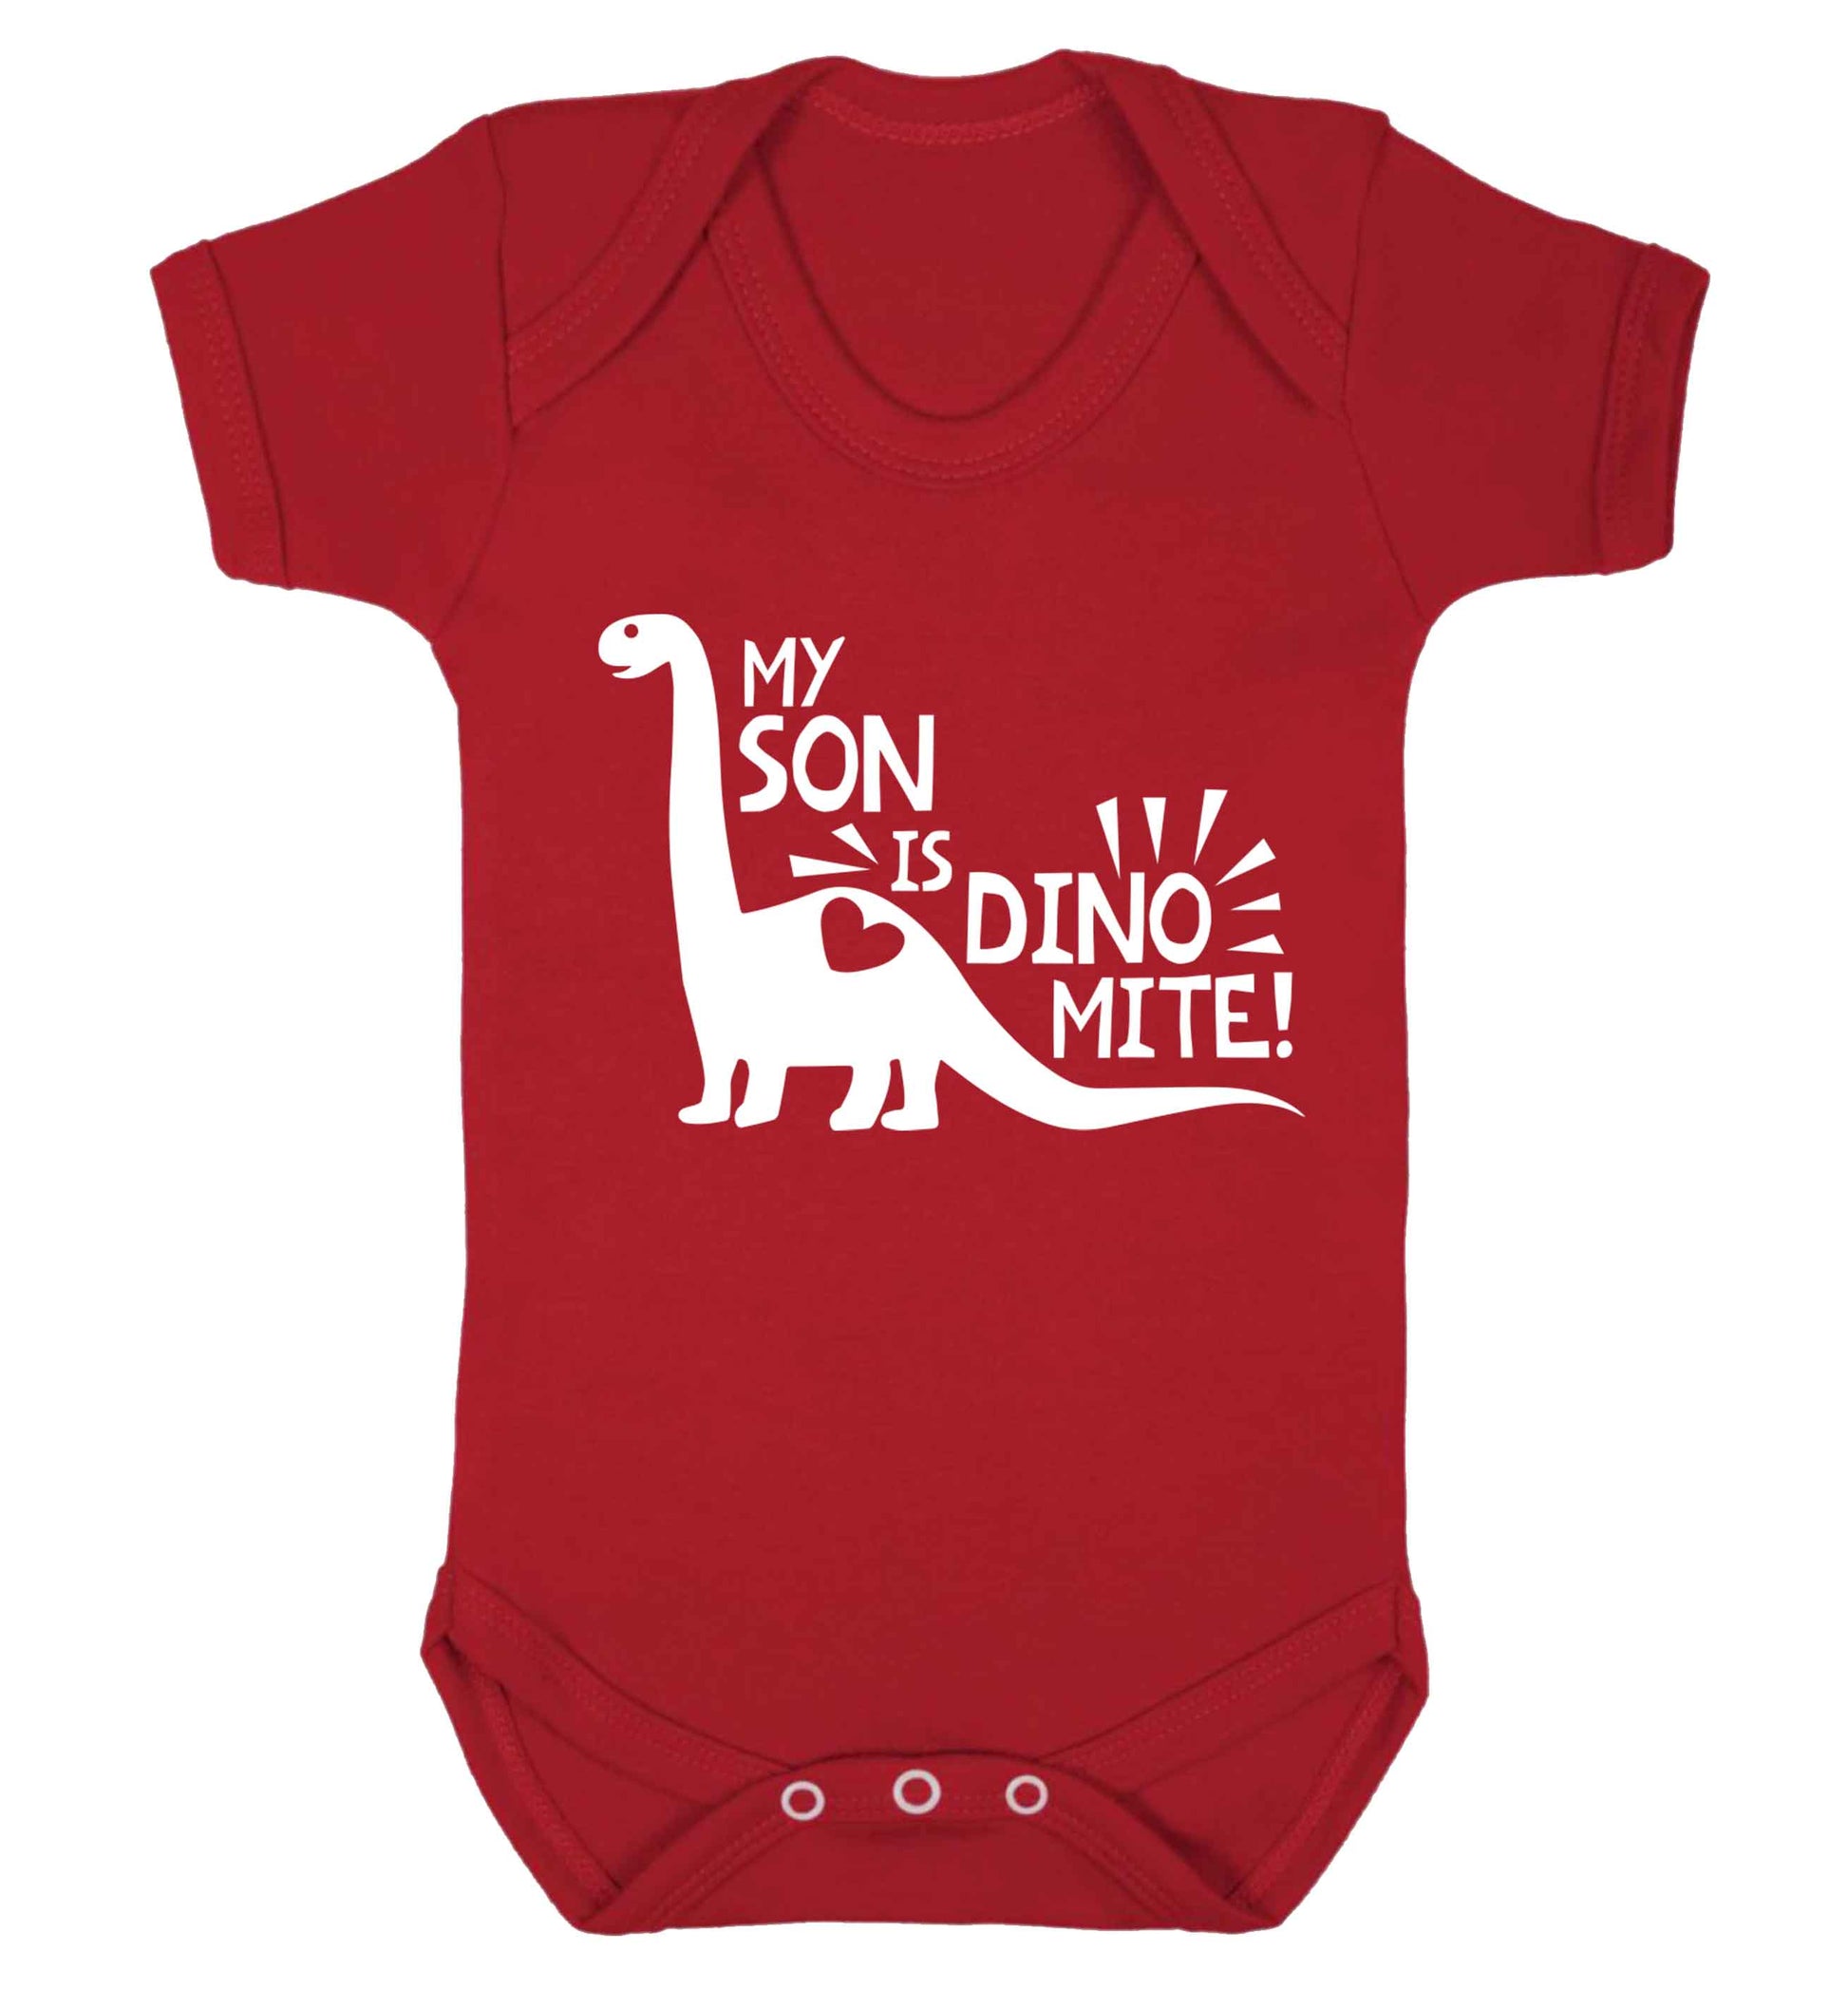 My son is dinomite! Baby Vest red 18-24 months